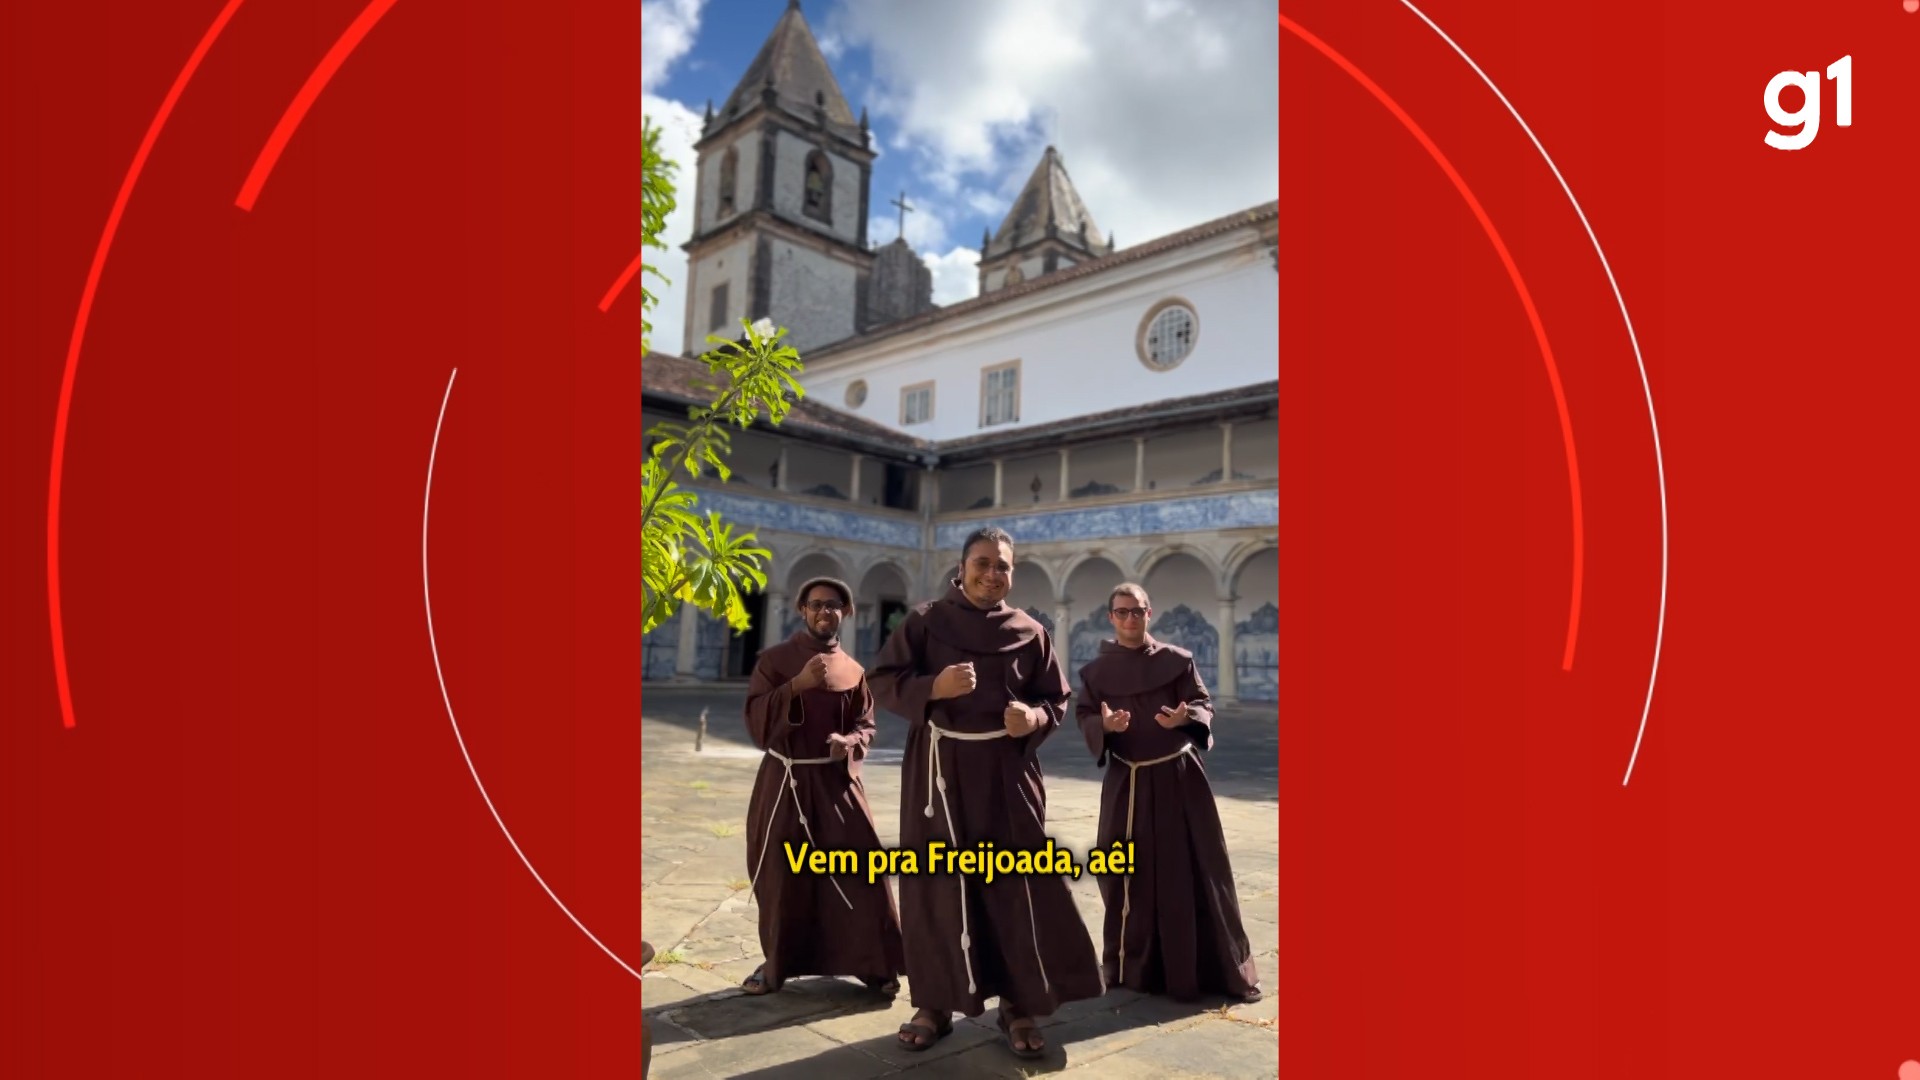 Freis católicos dançam lambada em convite para 'Freijoada' de Santo Antônio na Bahia; veja vídeo